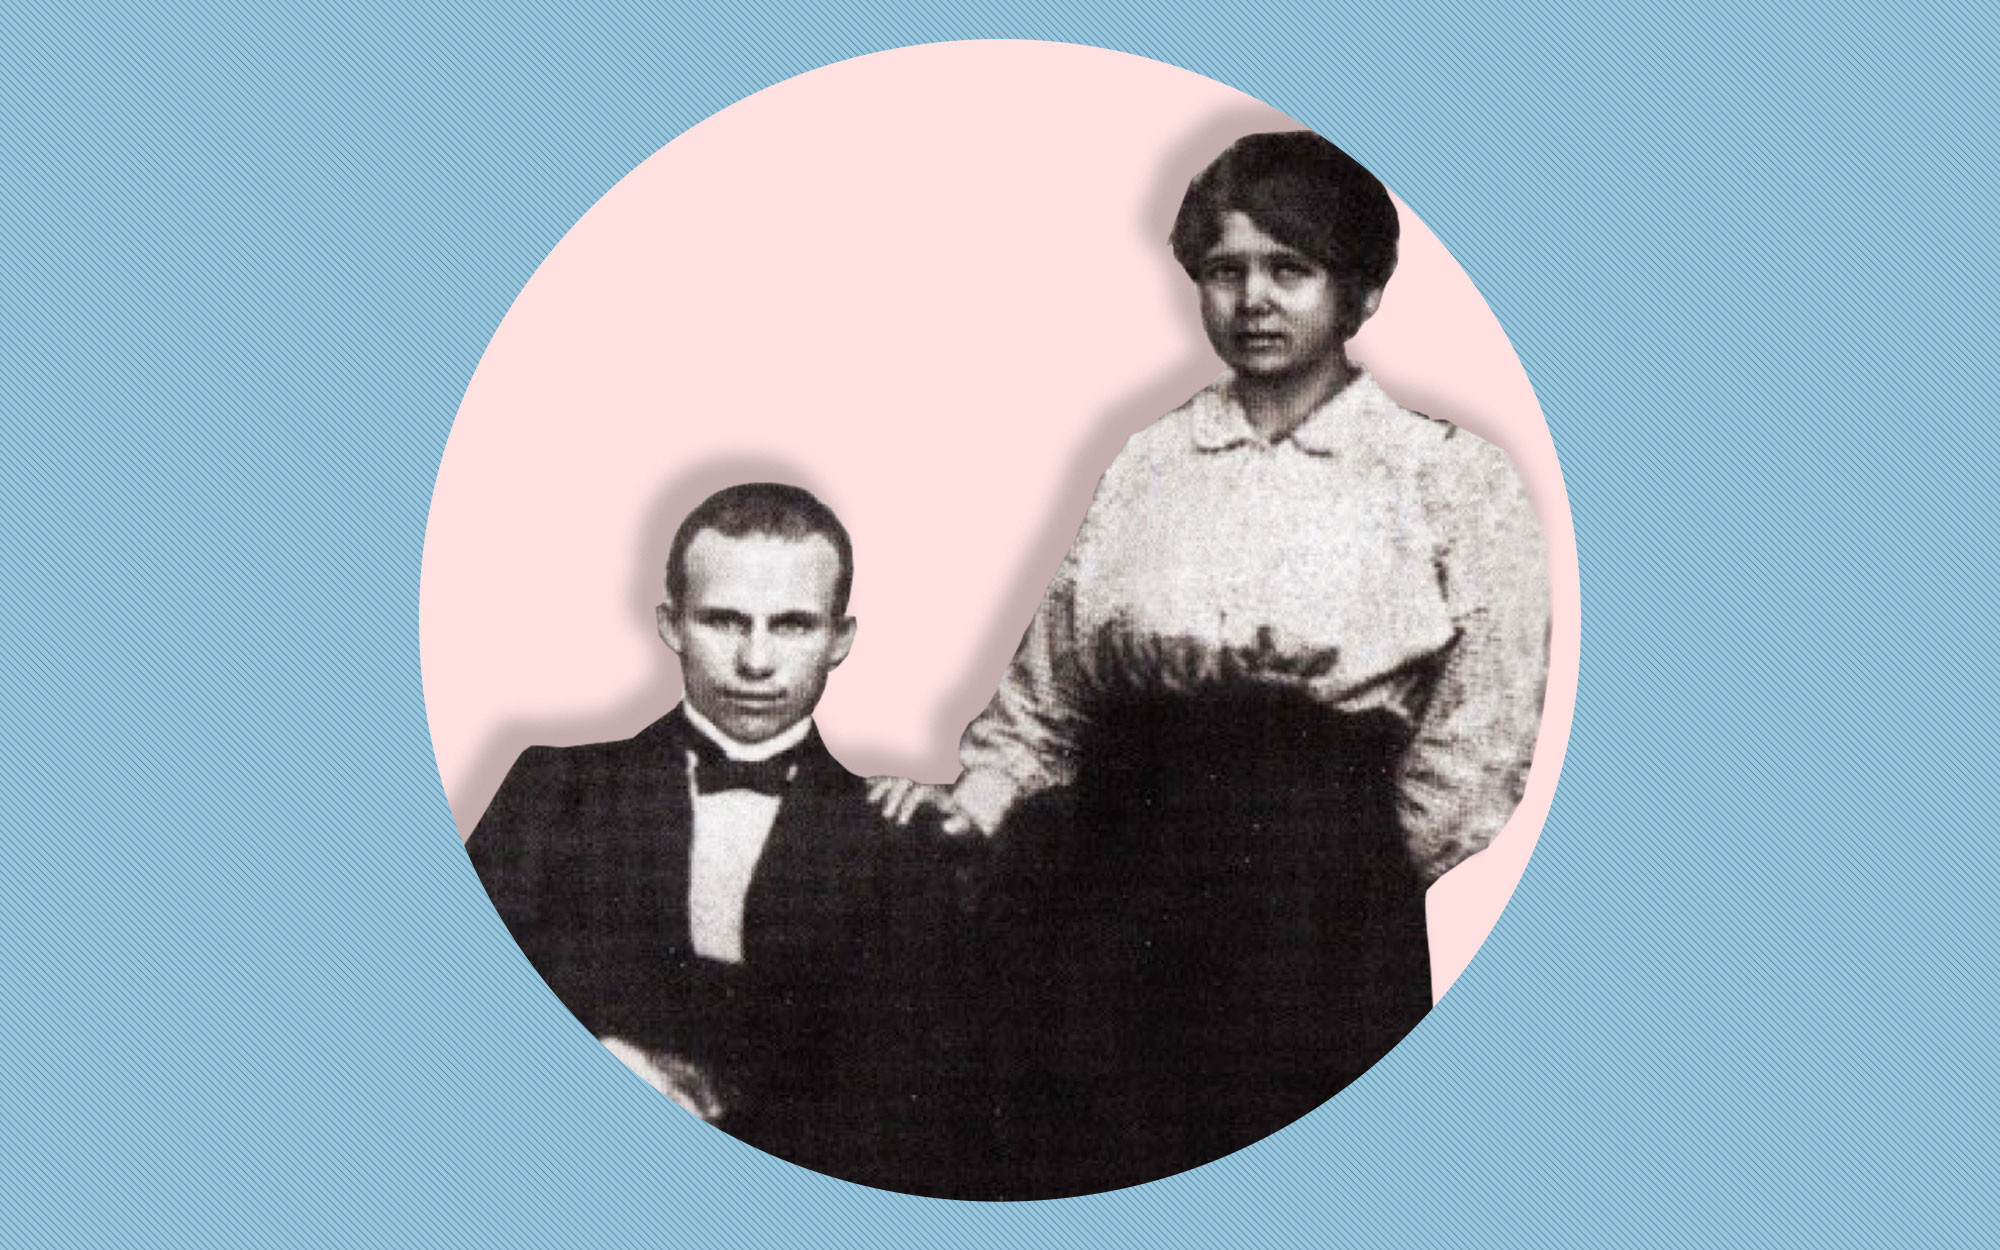 Н.С. Хрущёв со своей первой женой Е.И. Писаревой. Юзовка, ок. 1916 года. Коллаж © L!FE Фото: © Wikipedia.org